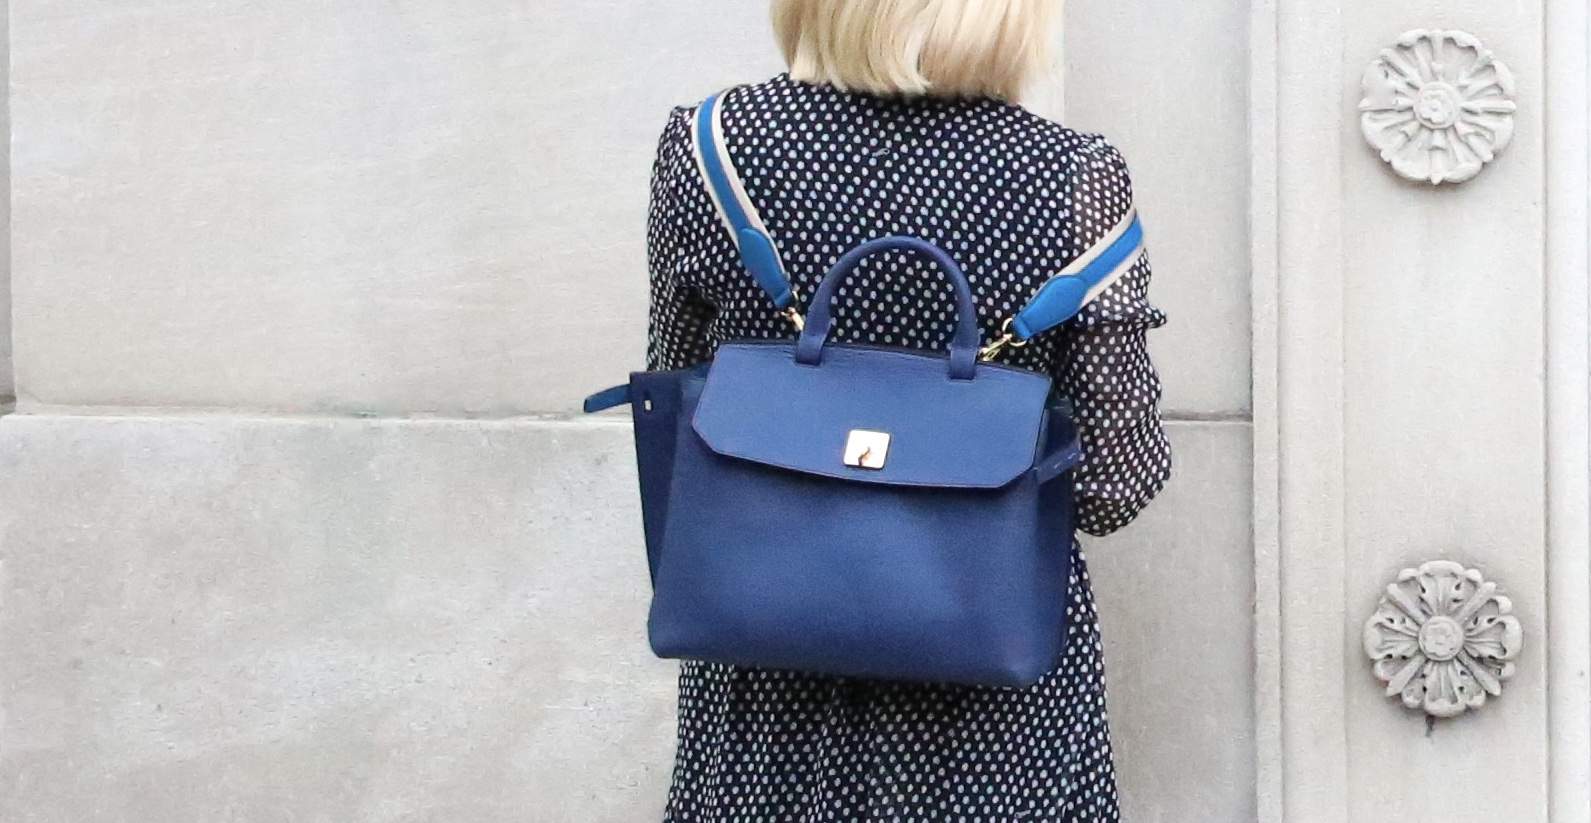 Sassy - Ladies Mini Backpack